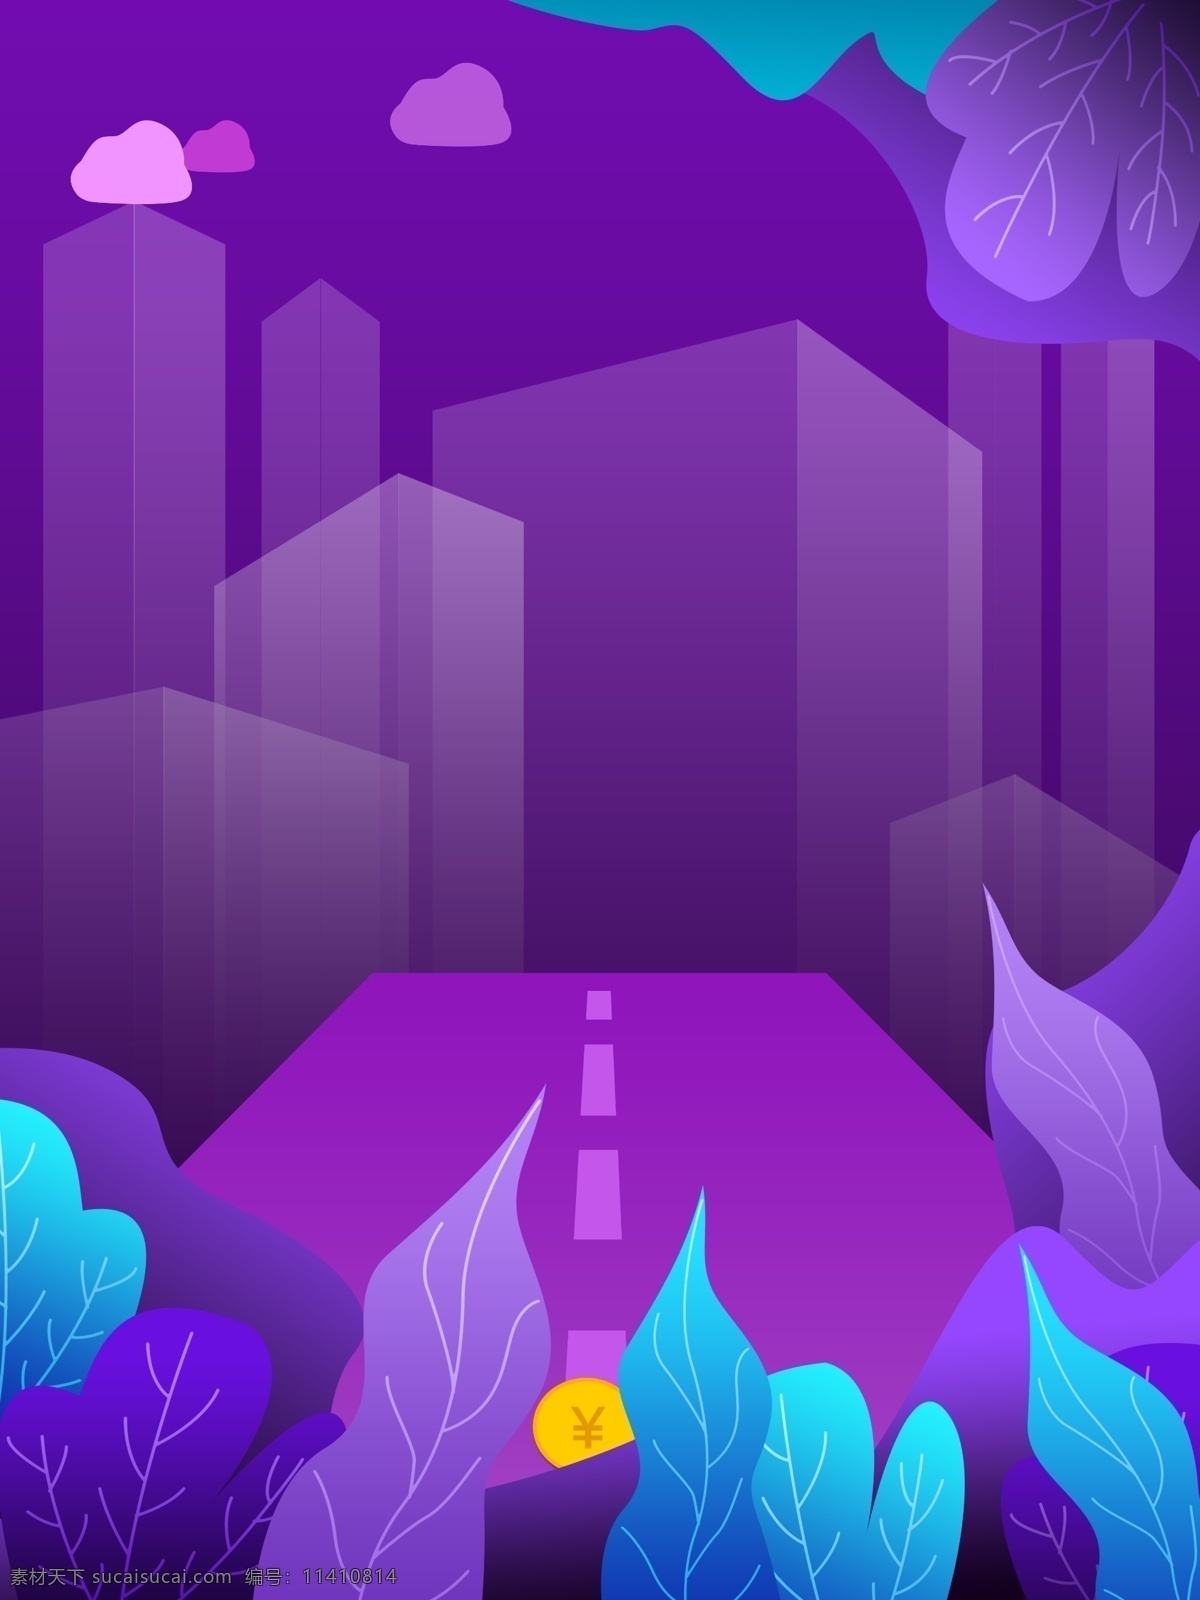 大气 梦幻 紫色 植物 插画 背景 紫色背景 卡通背景 植物插画背景 插画背景 建筑